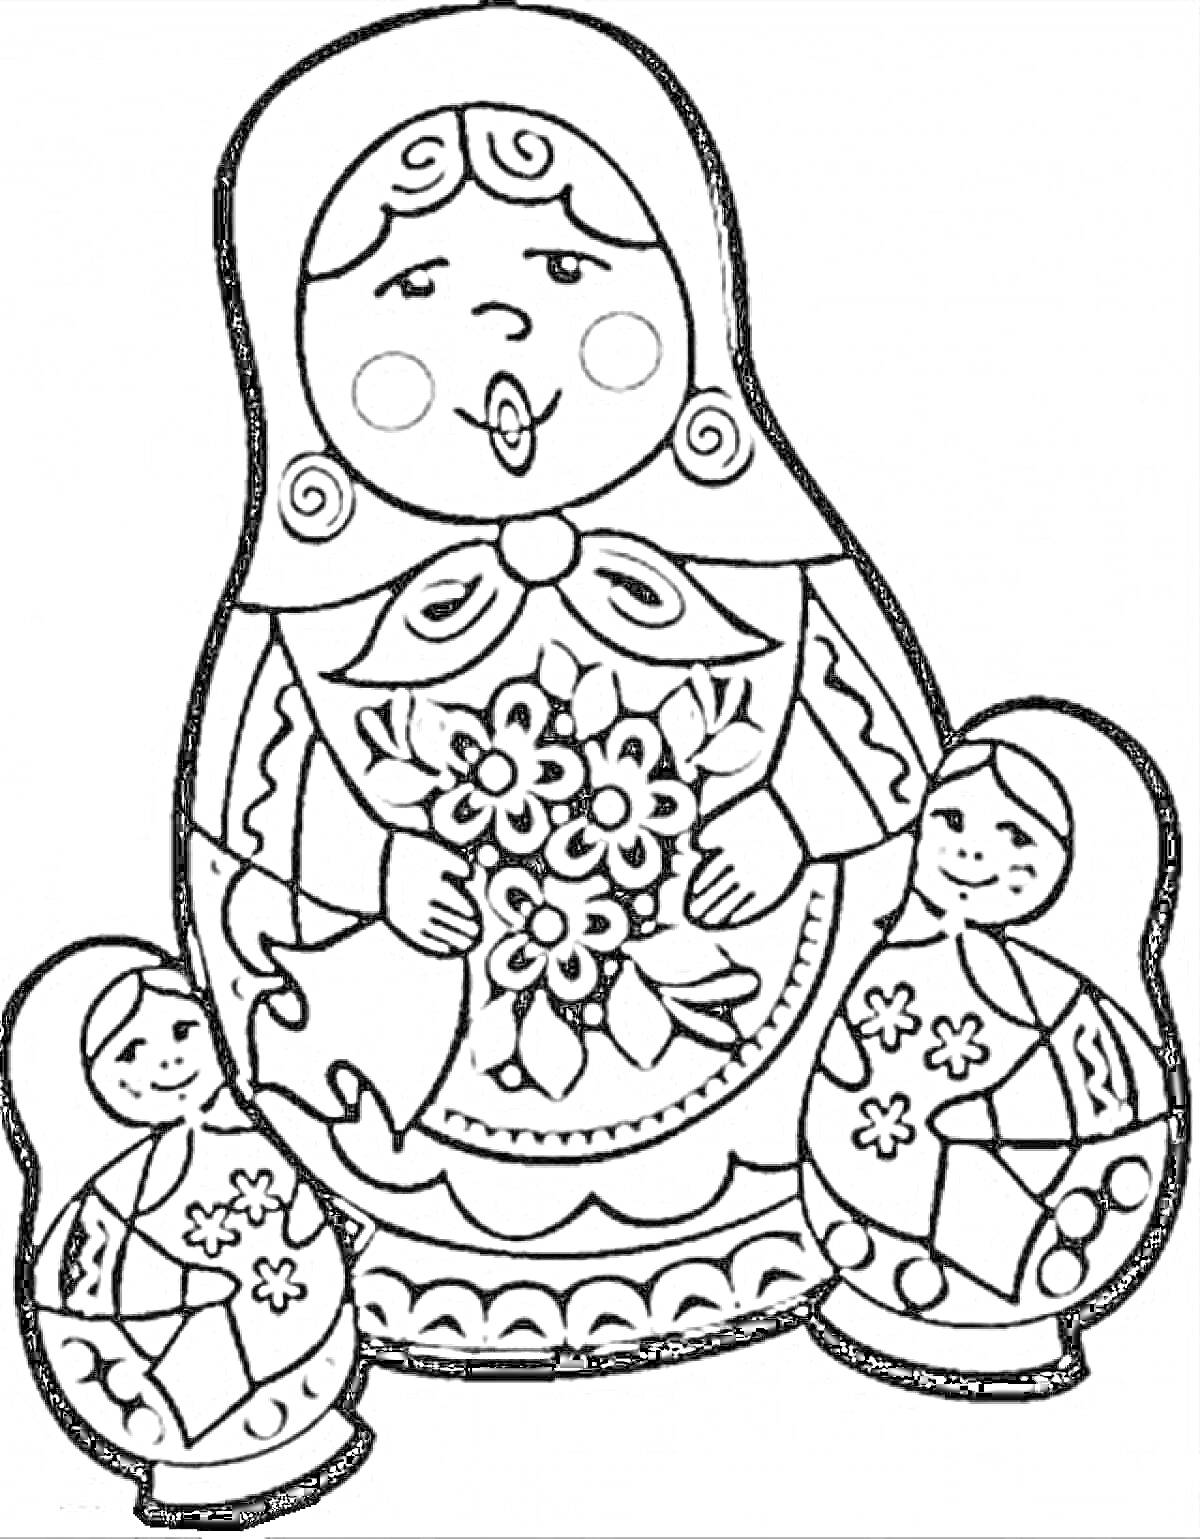 Раскраска Матрешка с двумя маленькими матрешками, держащая букет цветов